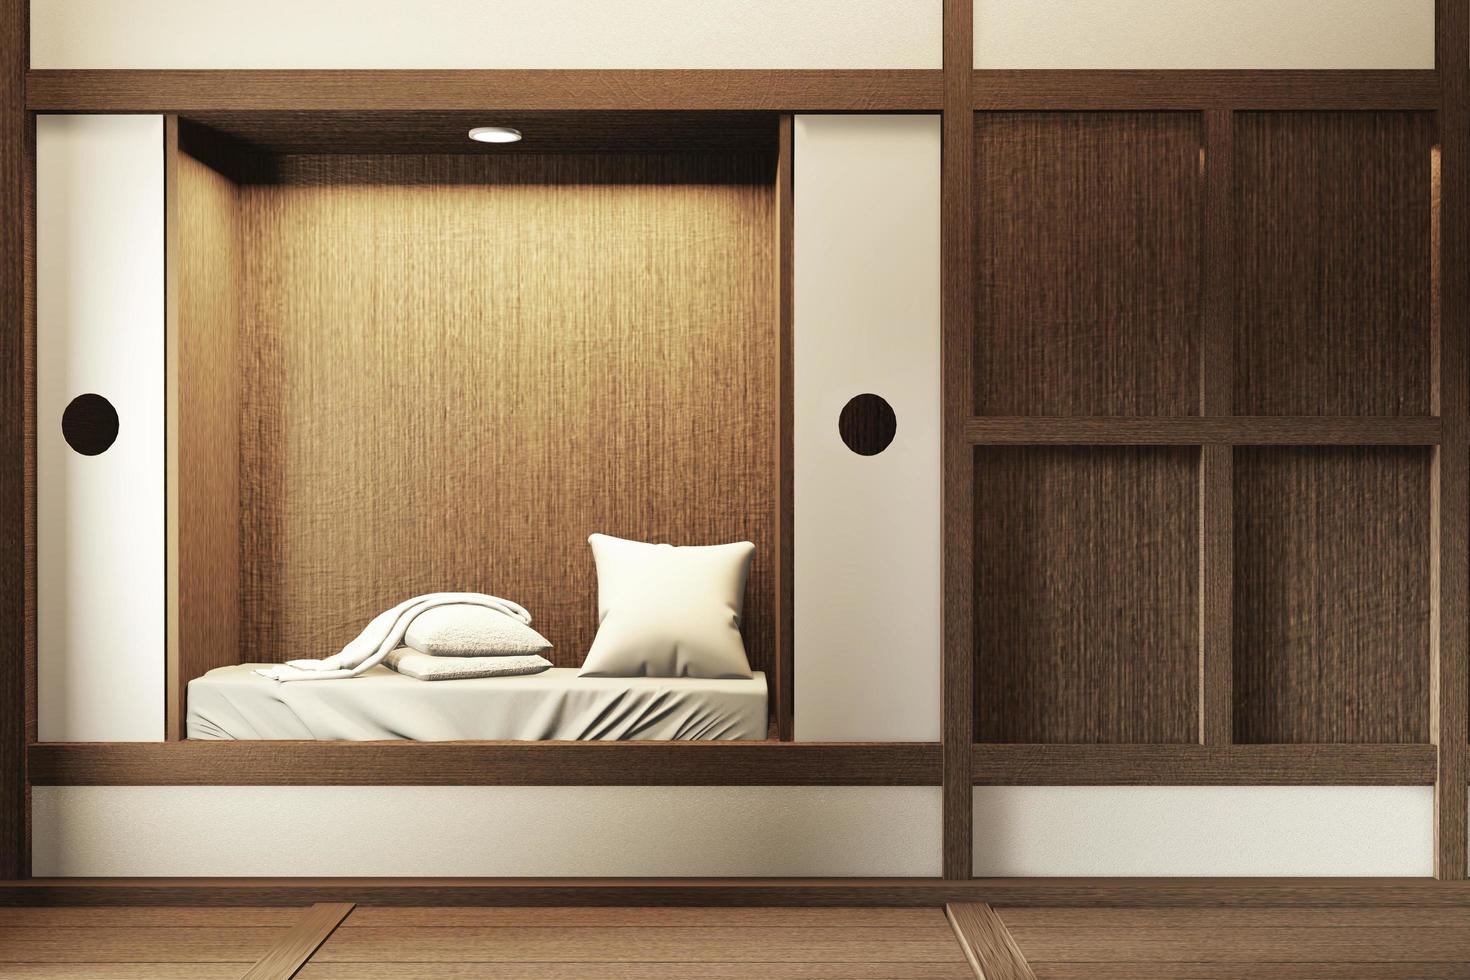 moderne zen rustige slaapkamer. Japanse stijl slaapkamer met plank muur ontwerp verborgen licht en decoratie Japanse stijl.3D-rendering foto